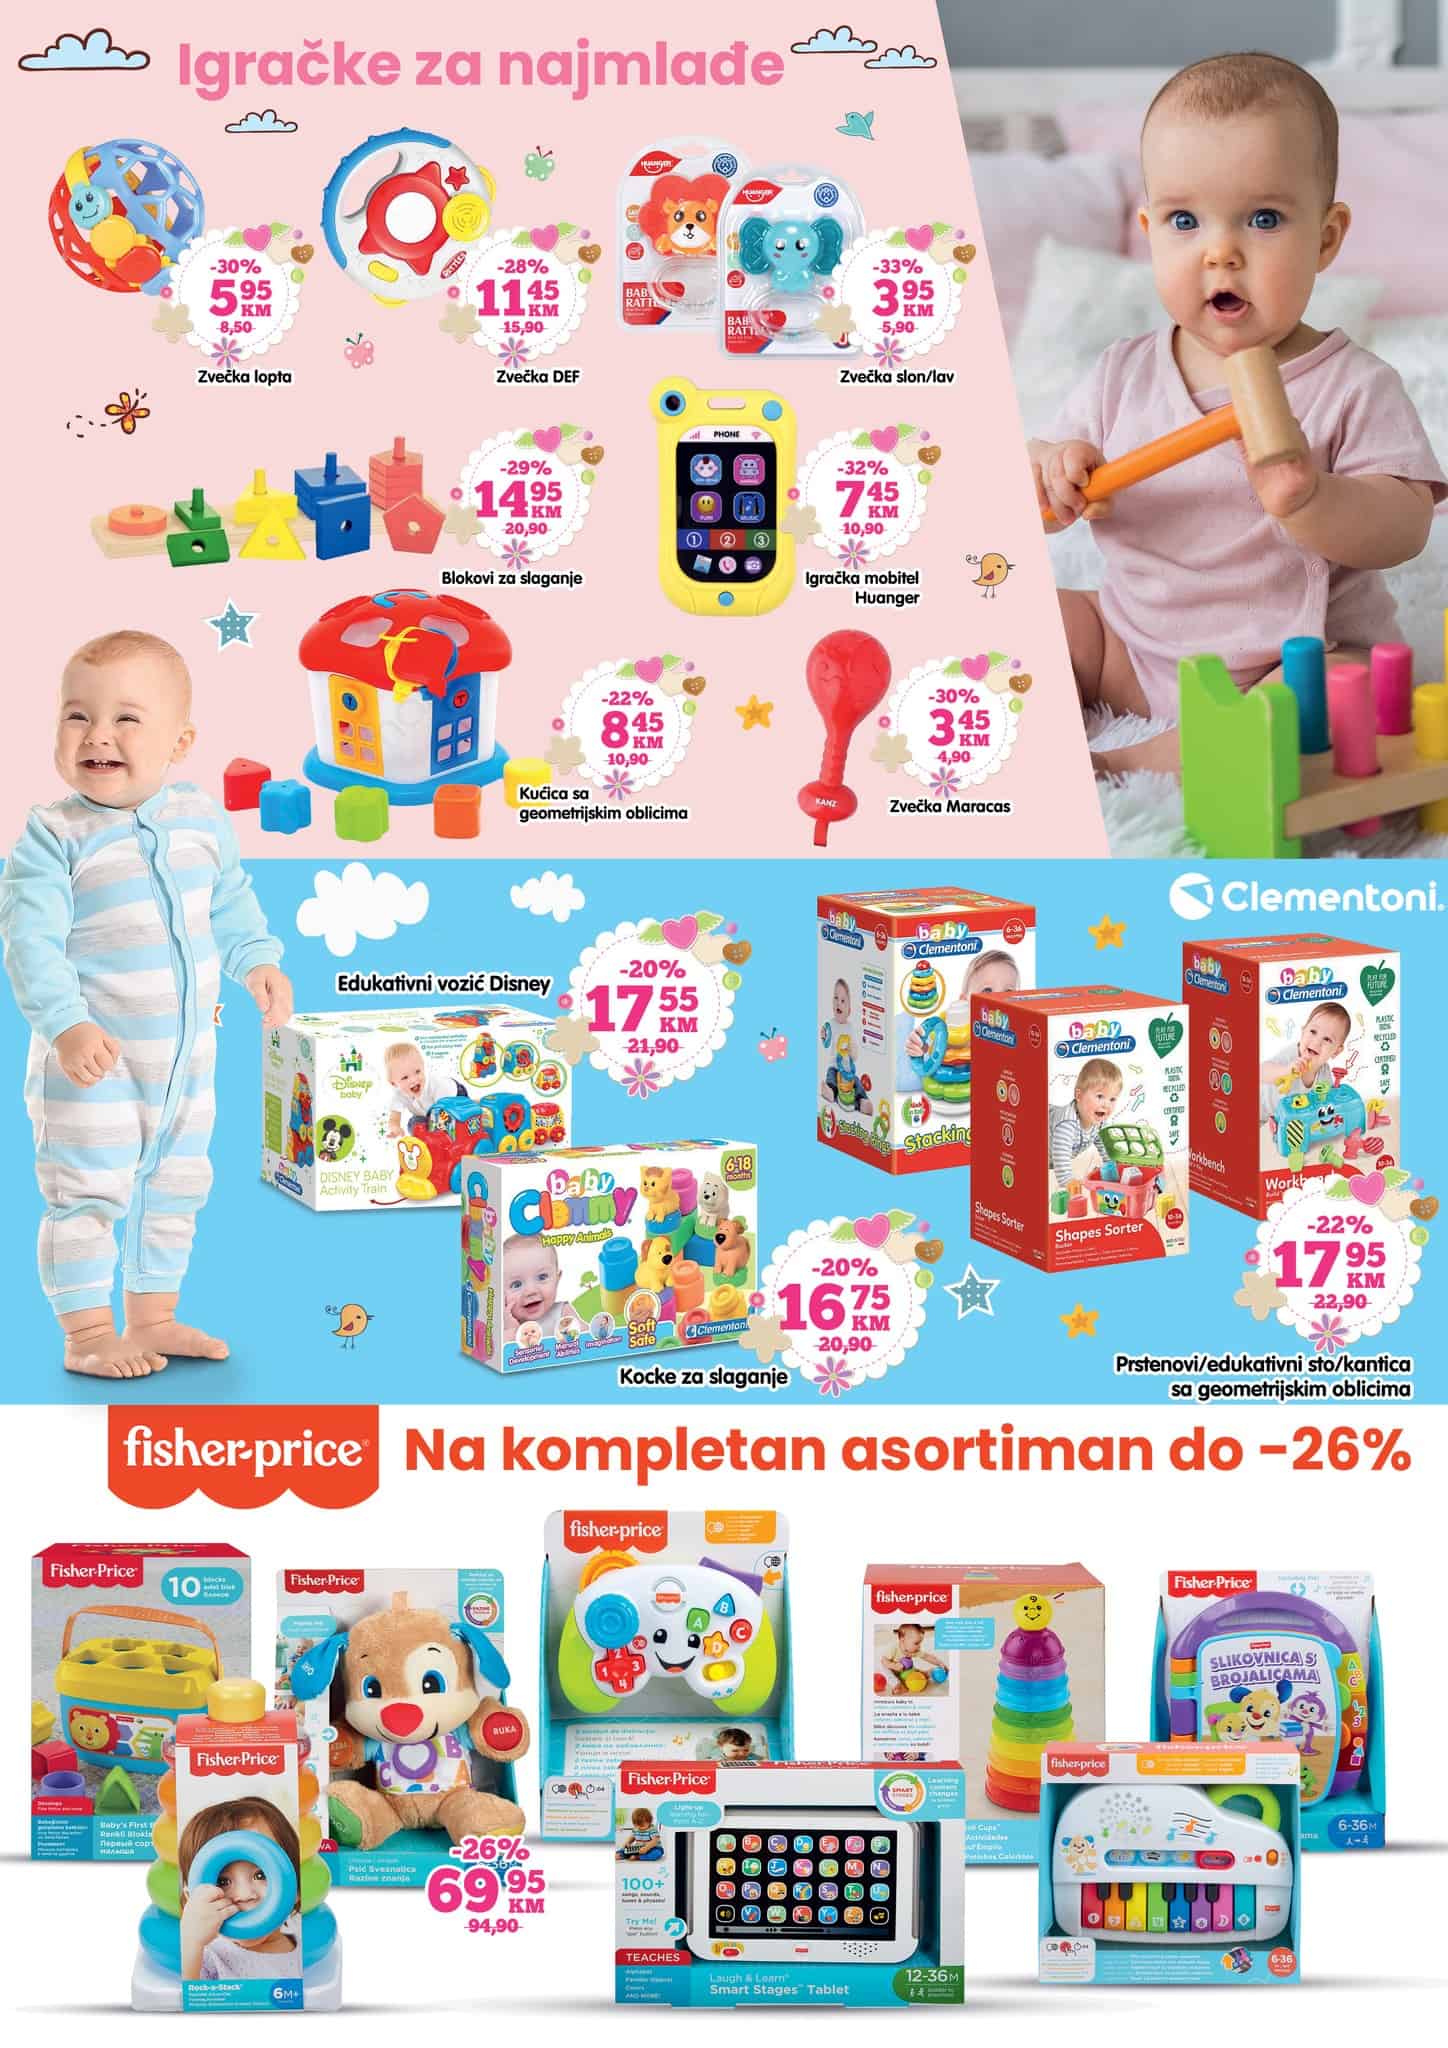 Veliki izbor igračaka za bebe pronadjite u Bingo prodavnicama uz popuste i do 33%!